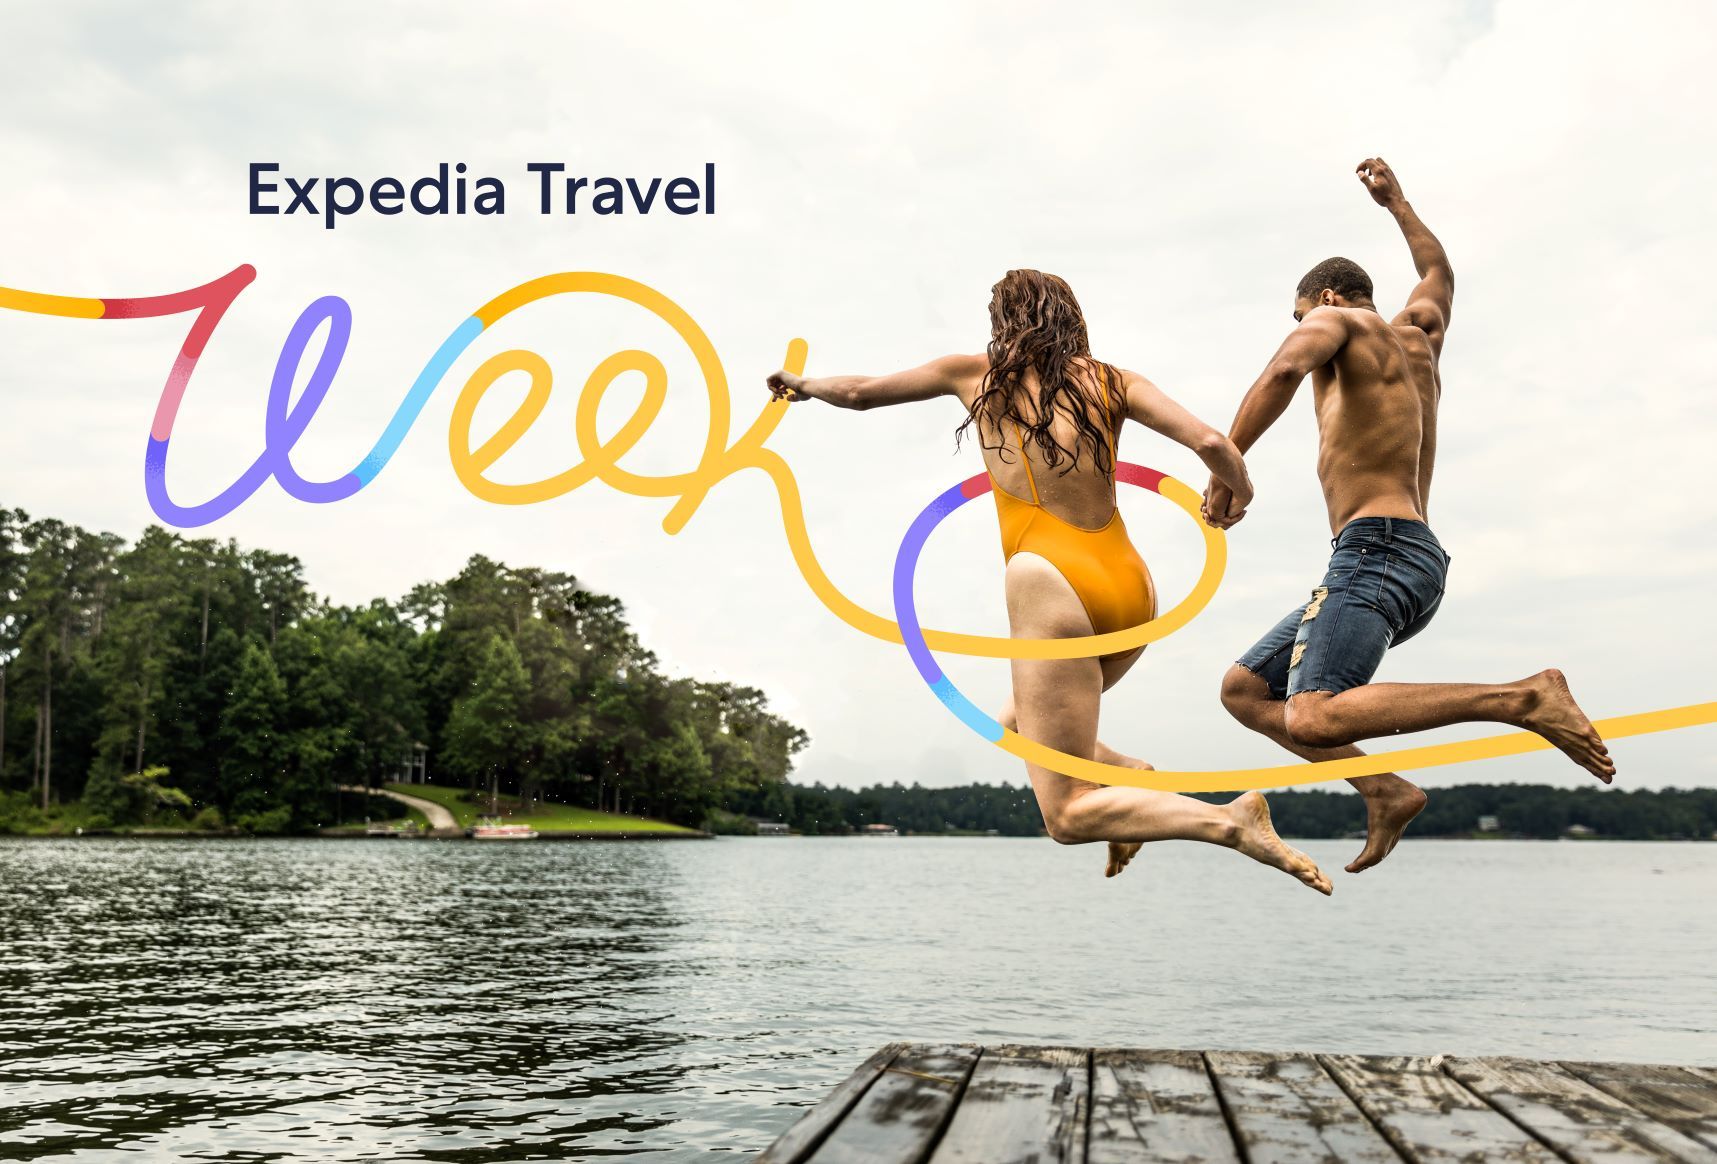 Expedia anuncia su primera Travel Week y empieza este 8 de junio